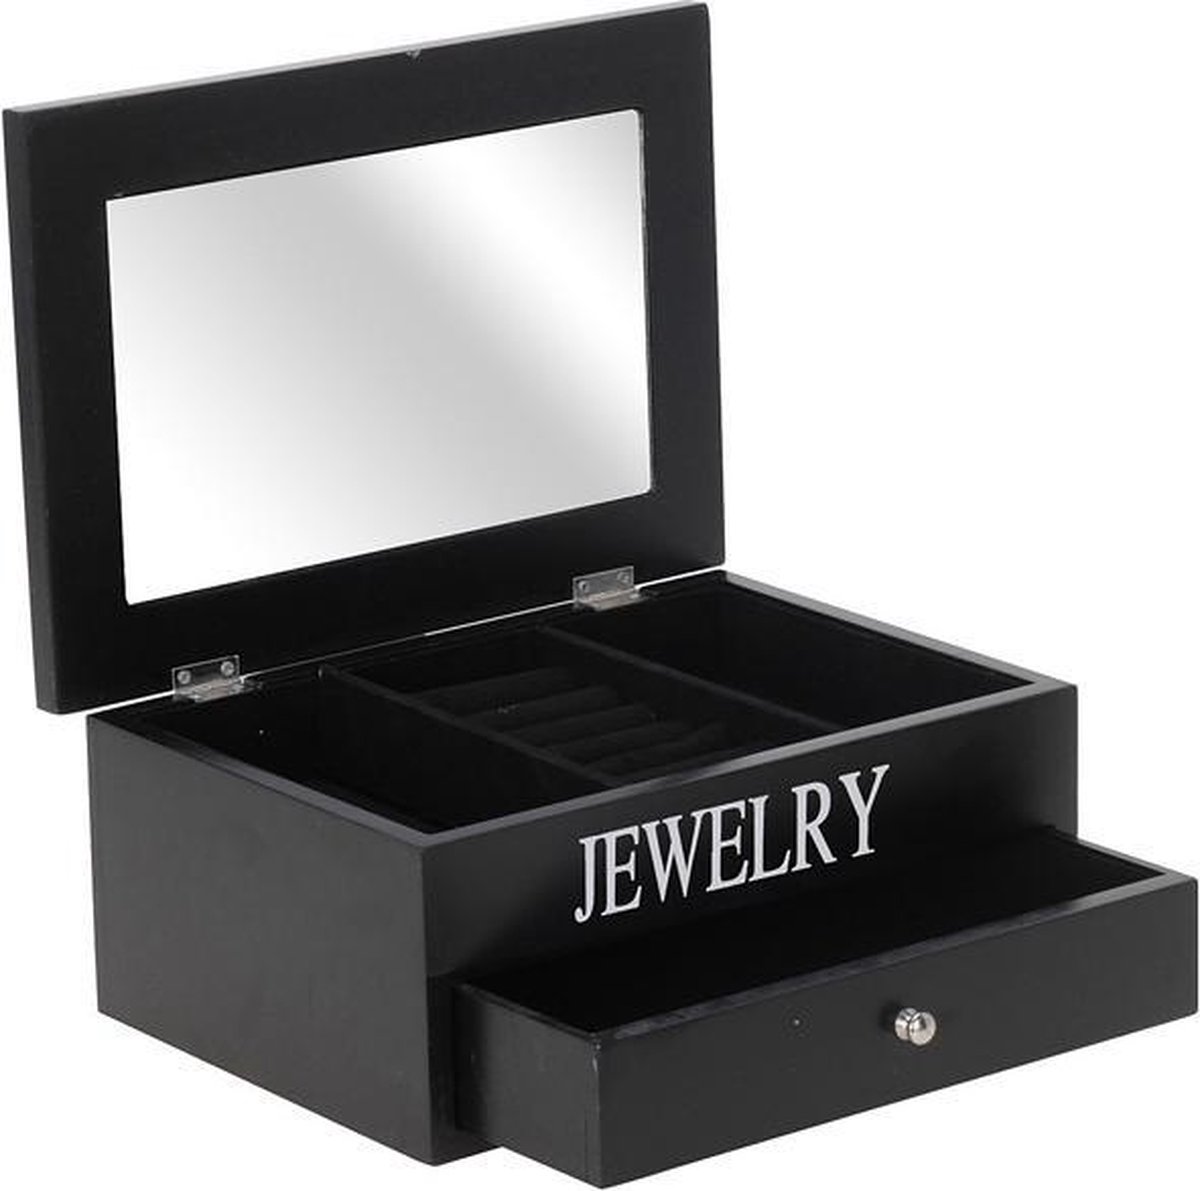 Zwart juwelenkistje met spiegel - Merkloos